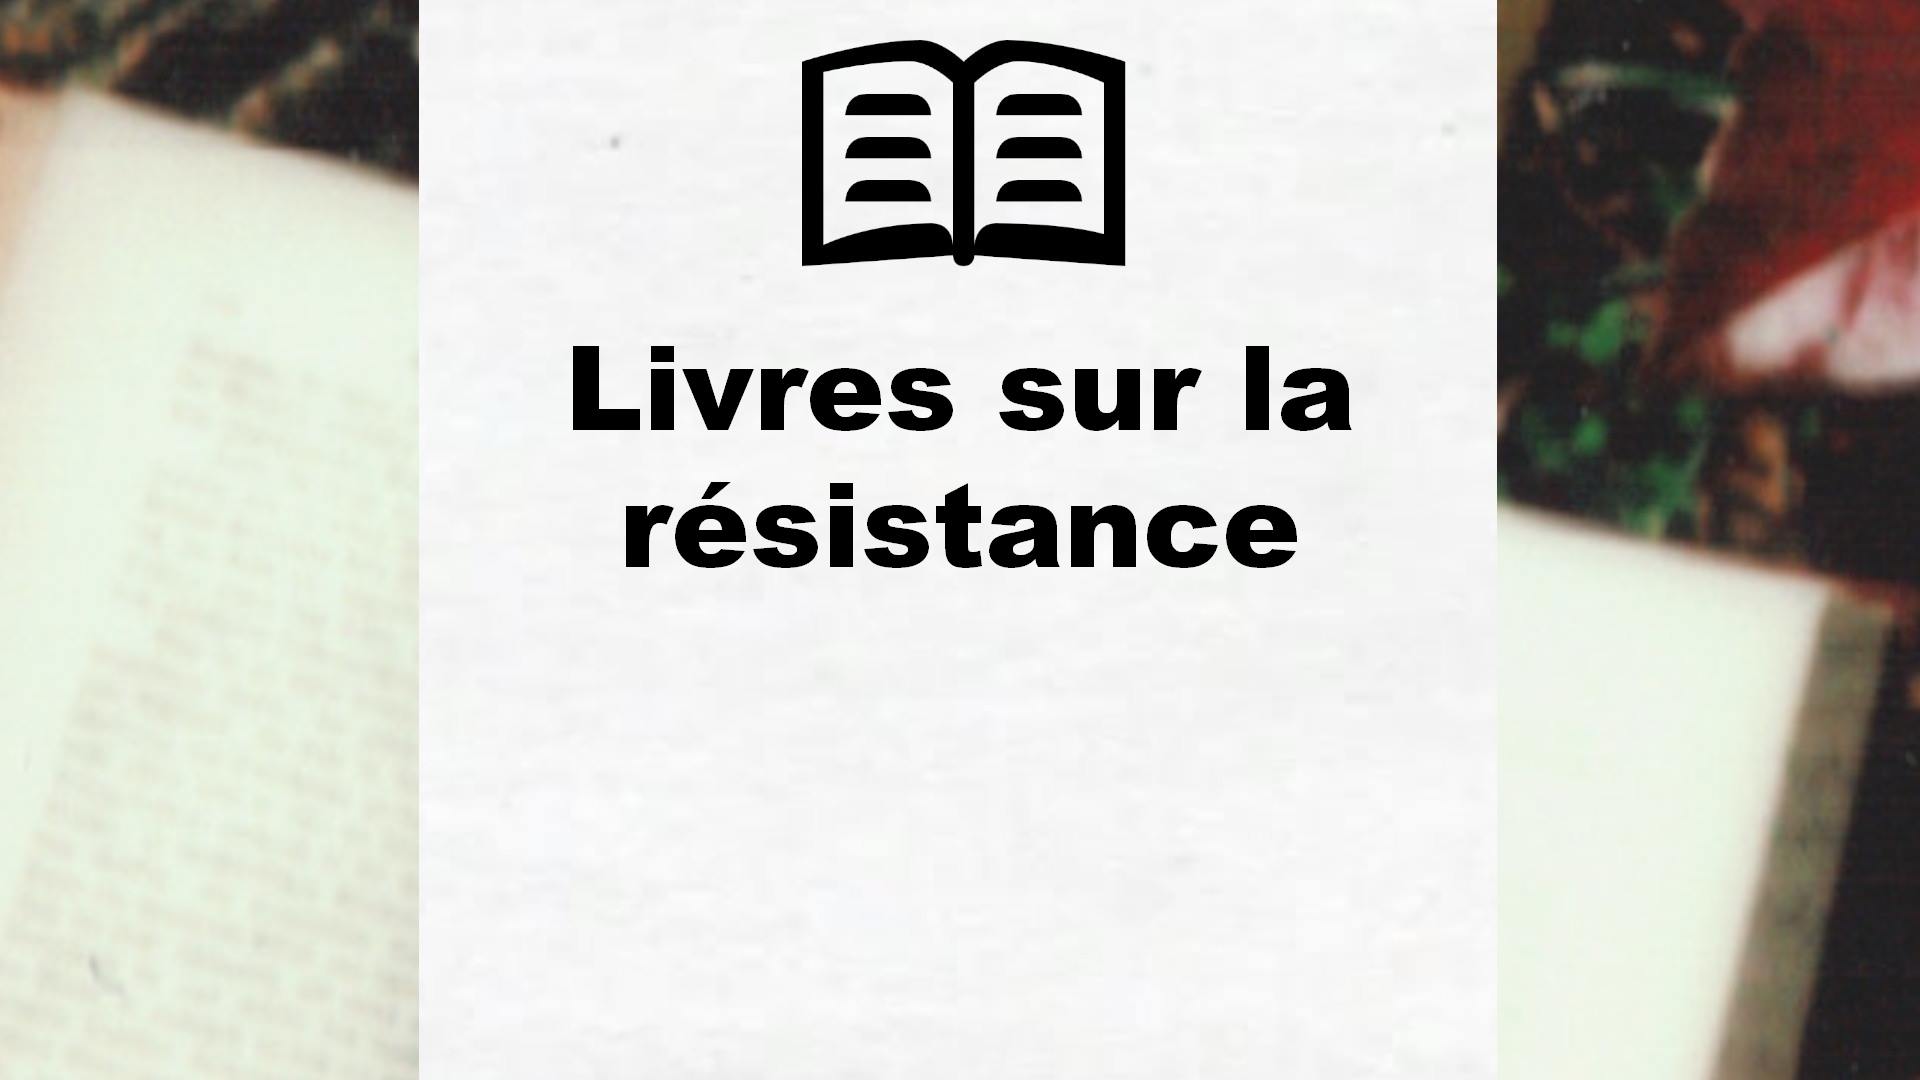 Livres sur la résistance